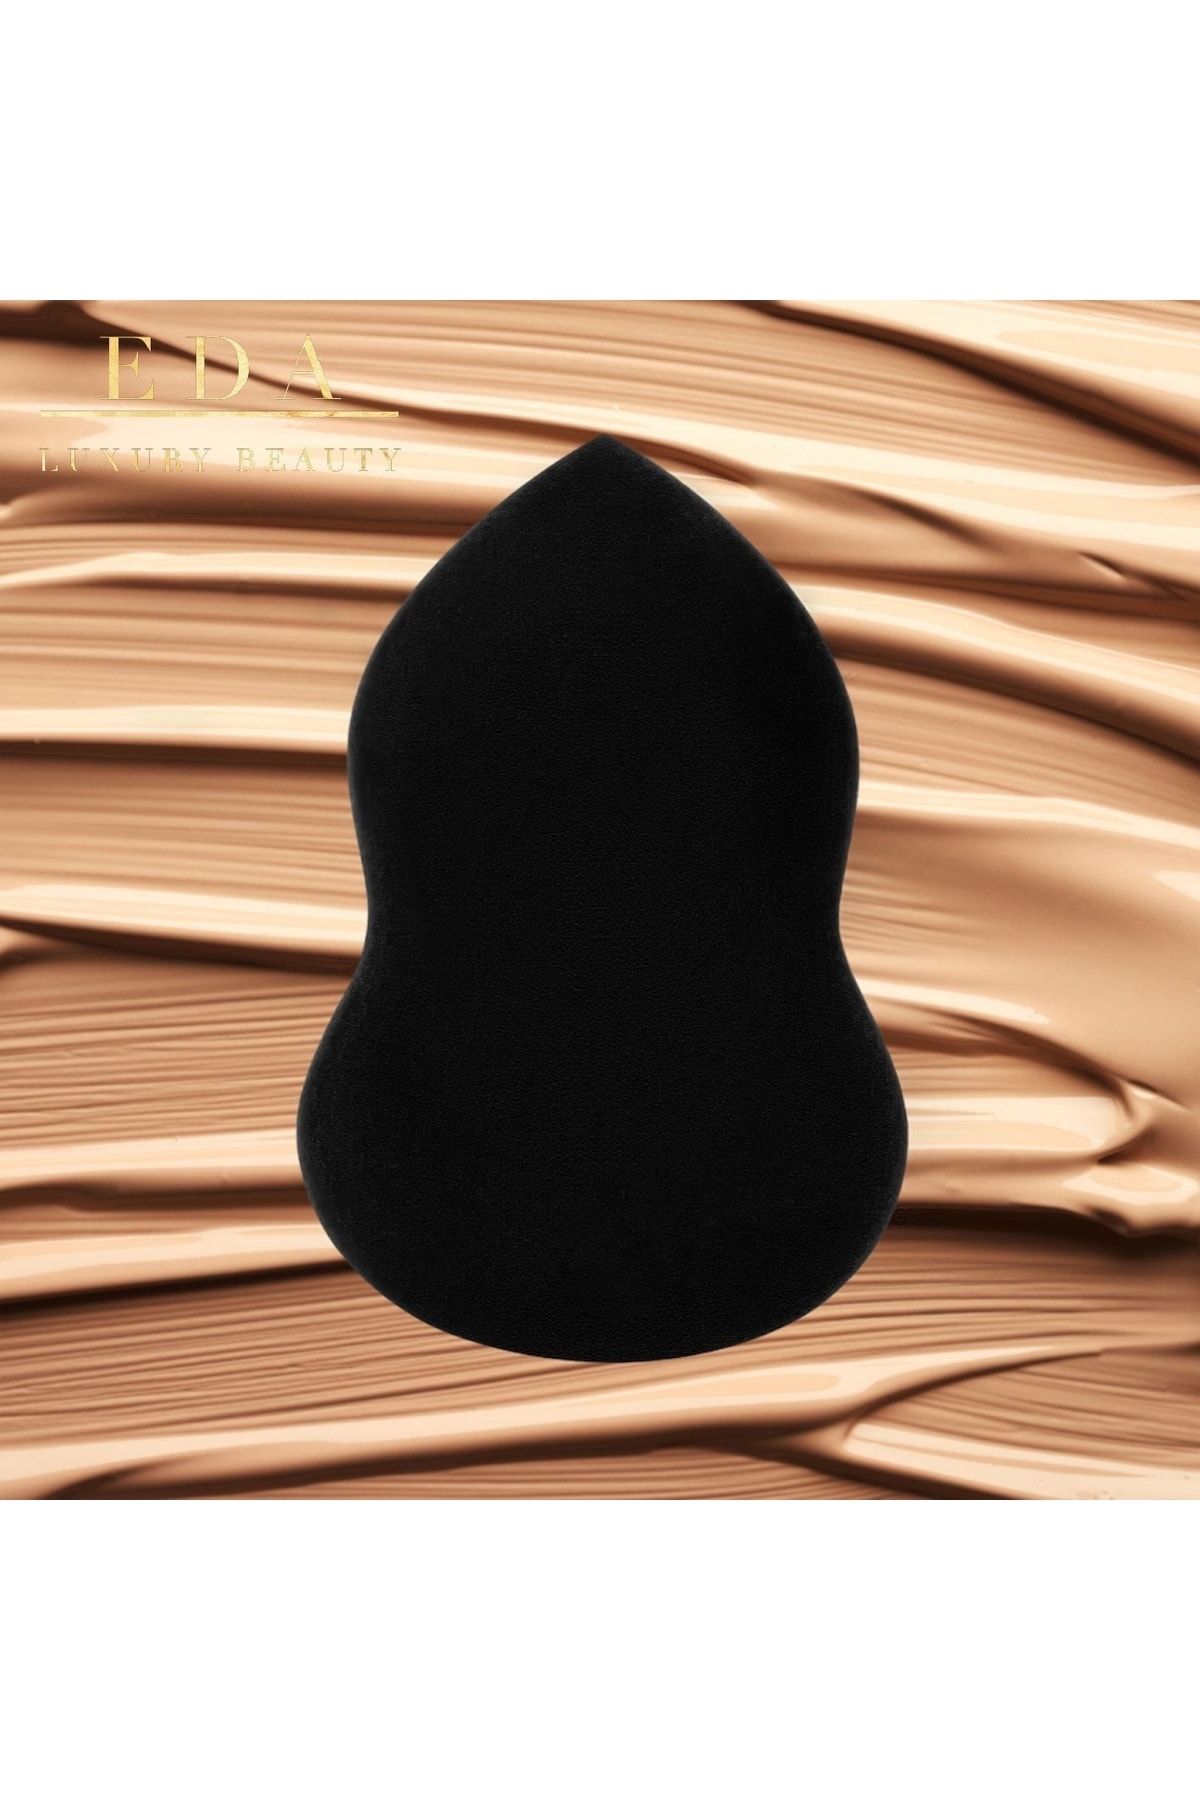 EDA LUXURY BEAUTY Siyah Makyaj Süngeri 100% Non Latex Ultra Soft Concealer Kontür Fondöten Yumuşak Vegan Makeup Sponge